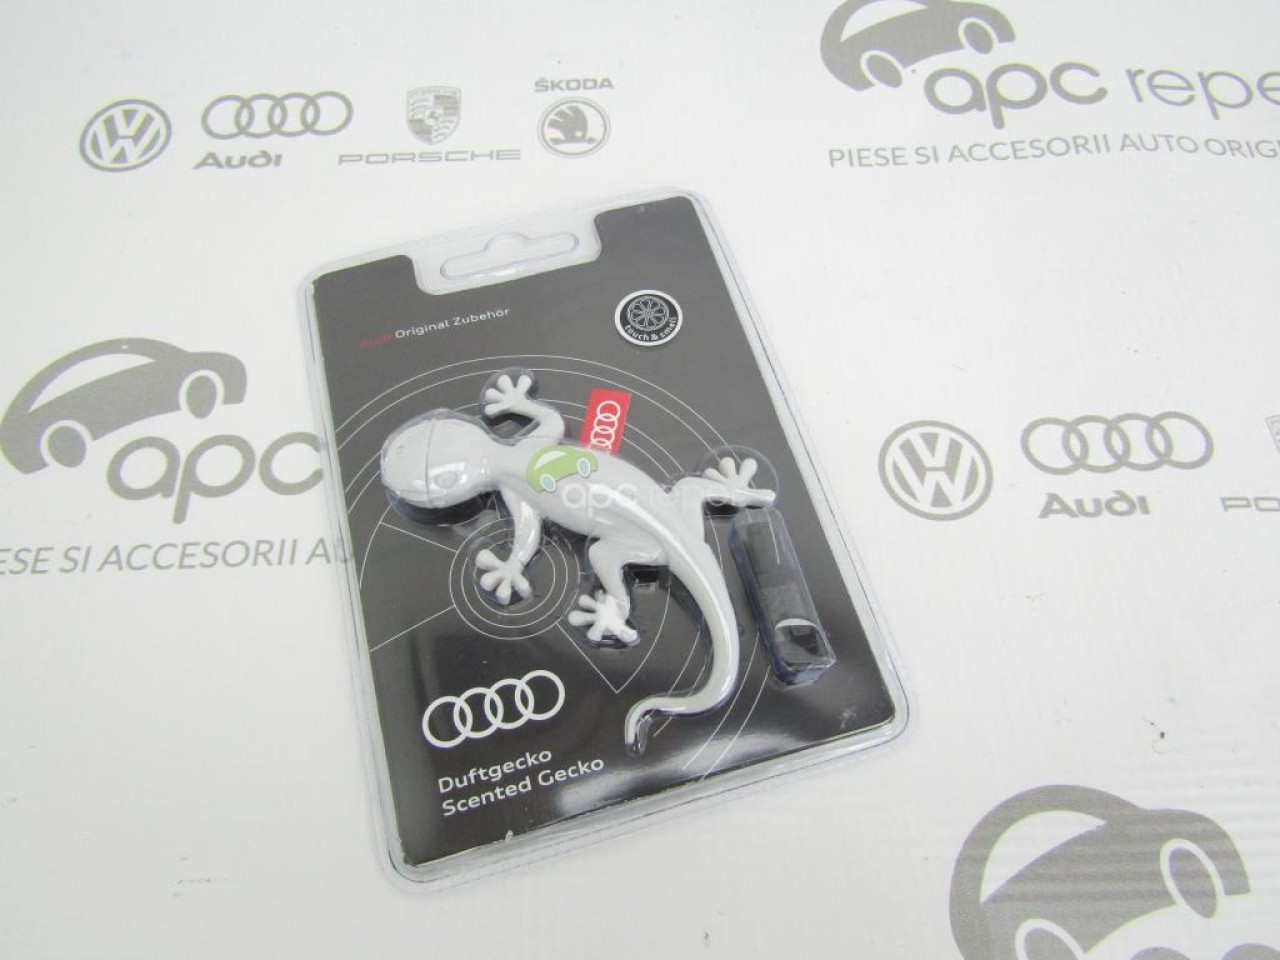 Audi Gecko Air Freshener - Black